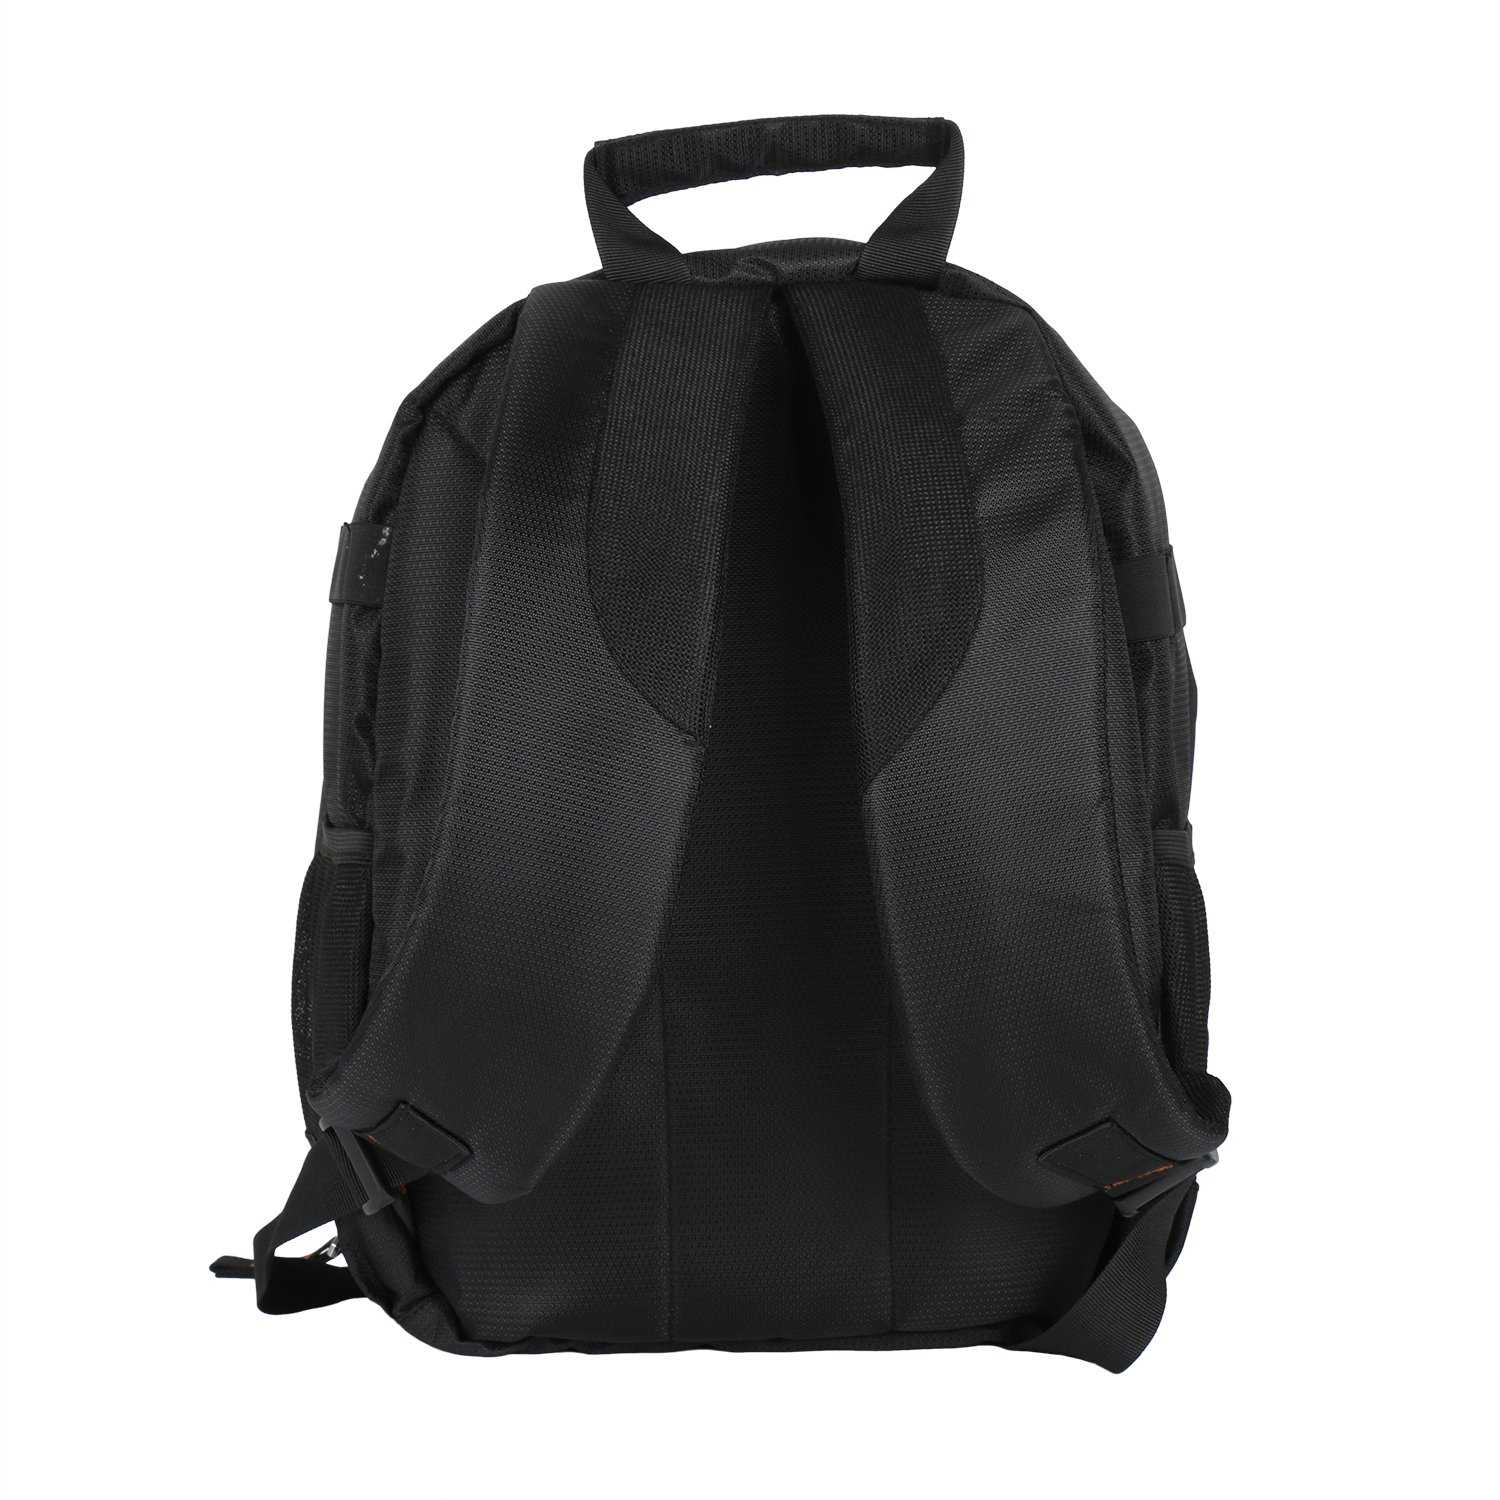 Copperzeit Professional DSLR/SLR Camera Bag/Camera Lens Shoulder Backpack Case (Orange) - Wudore.com